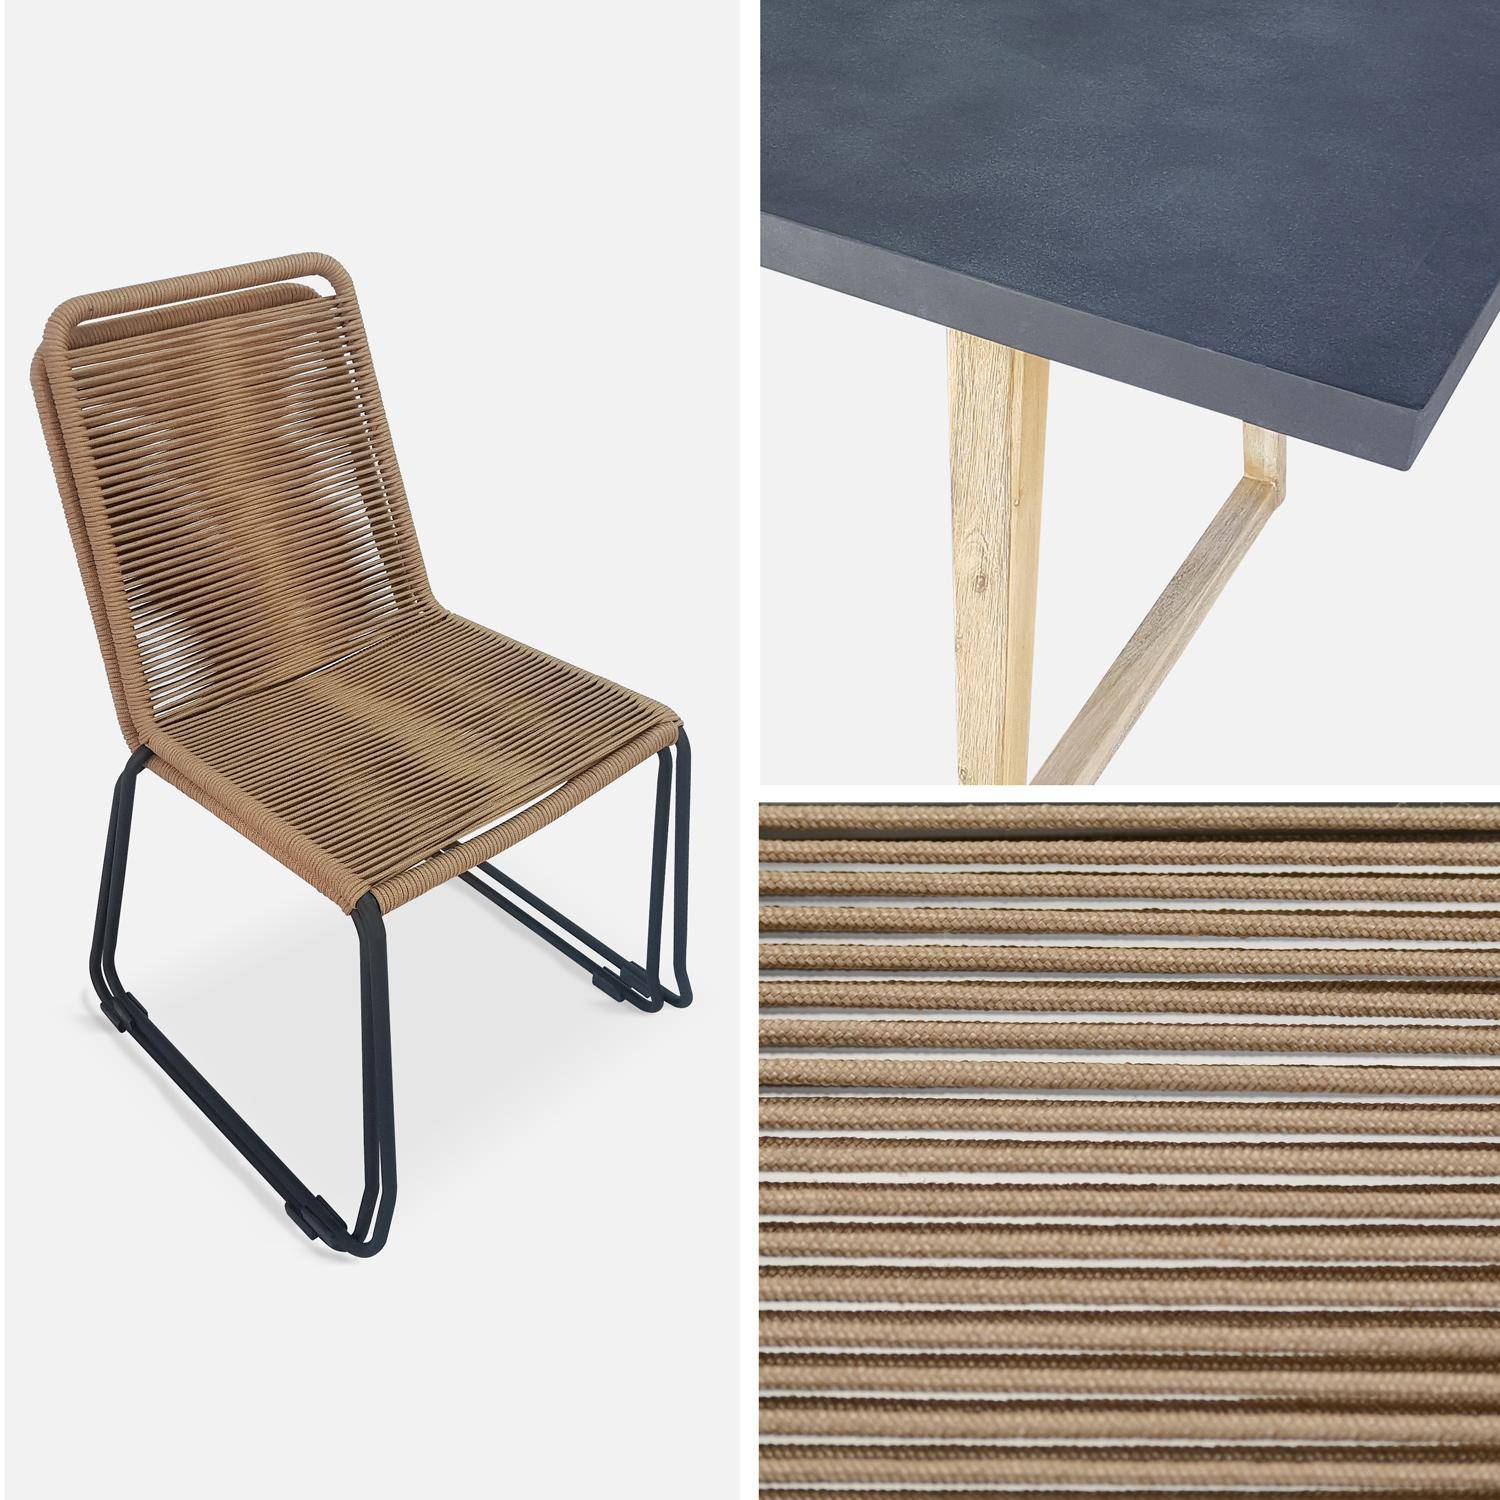 Table de jardin rectangle en fibre de ciment, effet béton, 160cm Borneo et chaises de jardin Brasilia en corde beige empilables Photo4